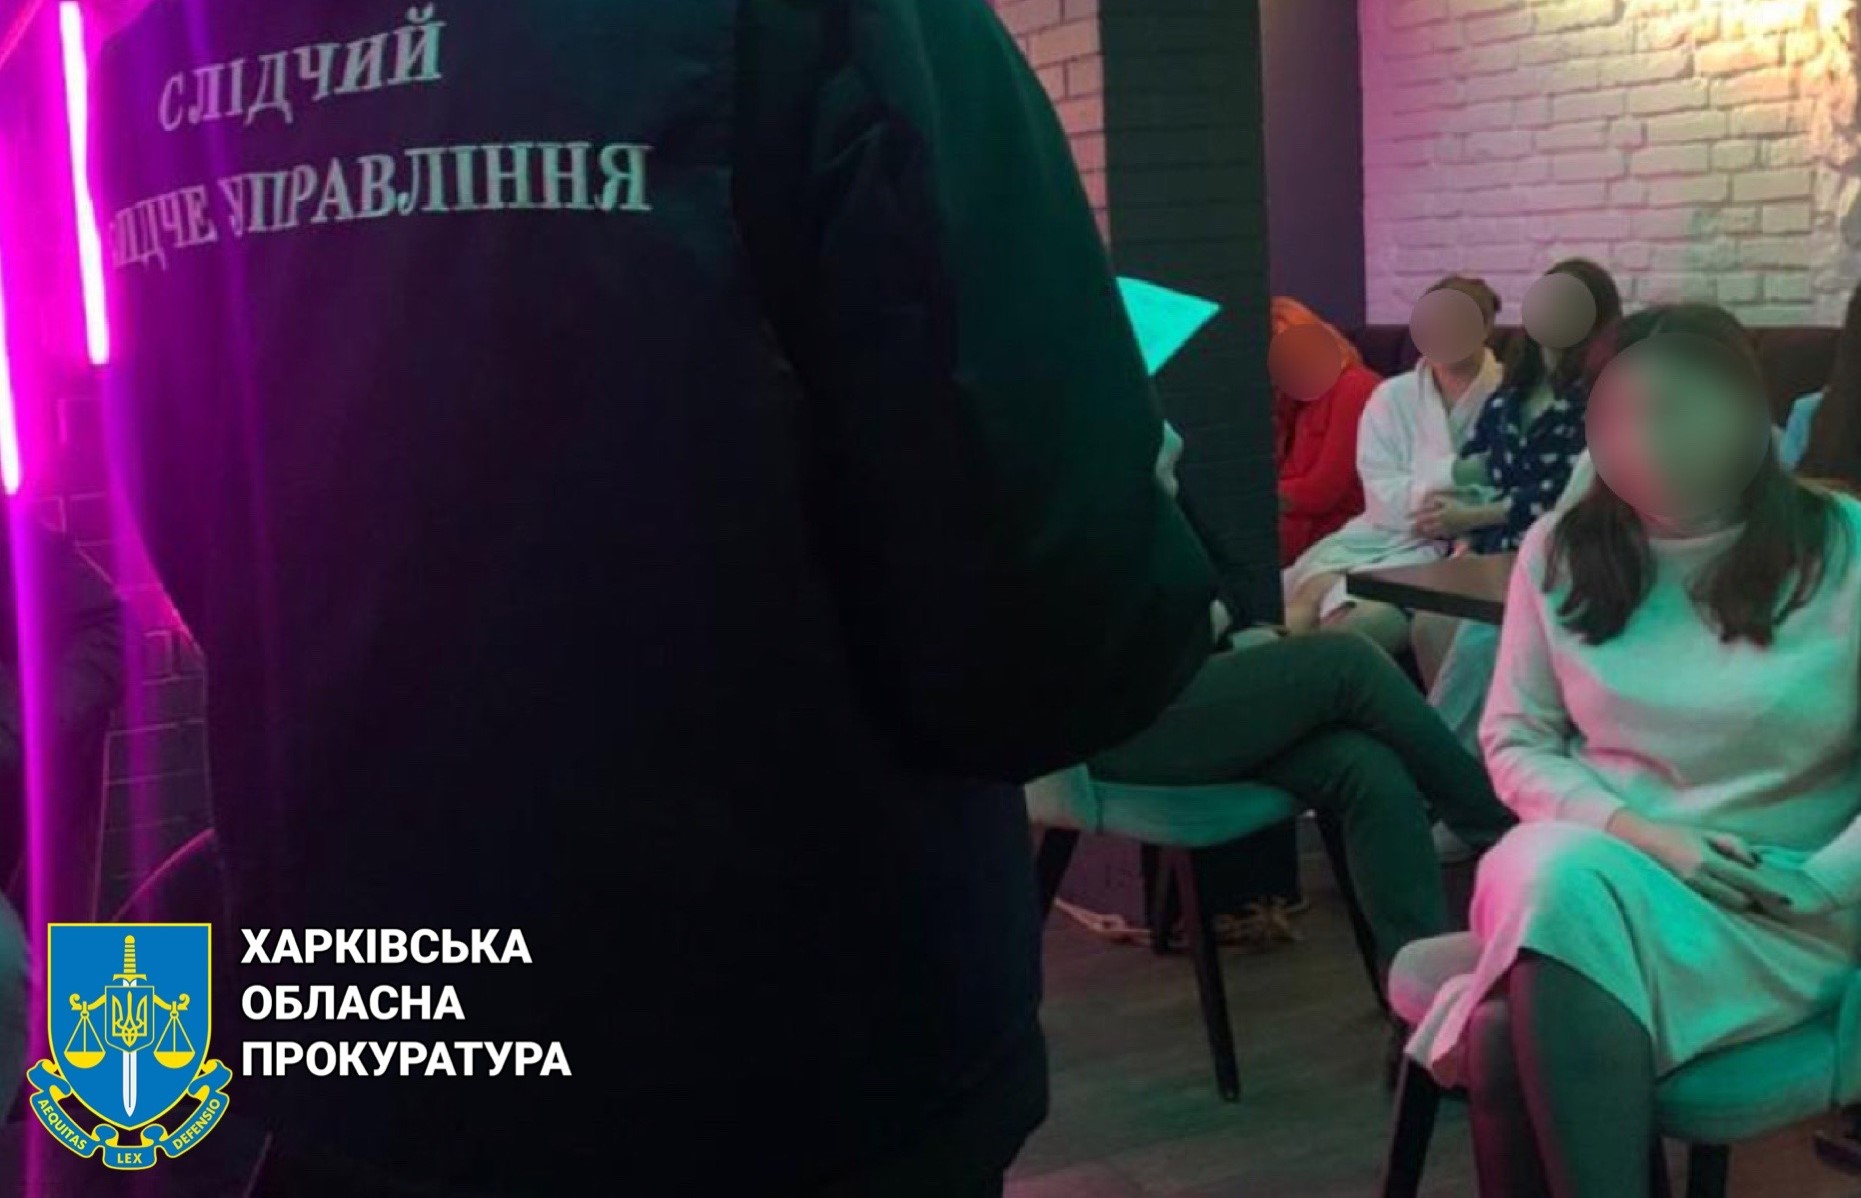 Ночь с девушкой — 22 тыс грн: опубликован прайс «массажного салона» в Харькове